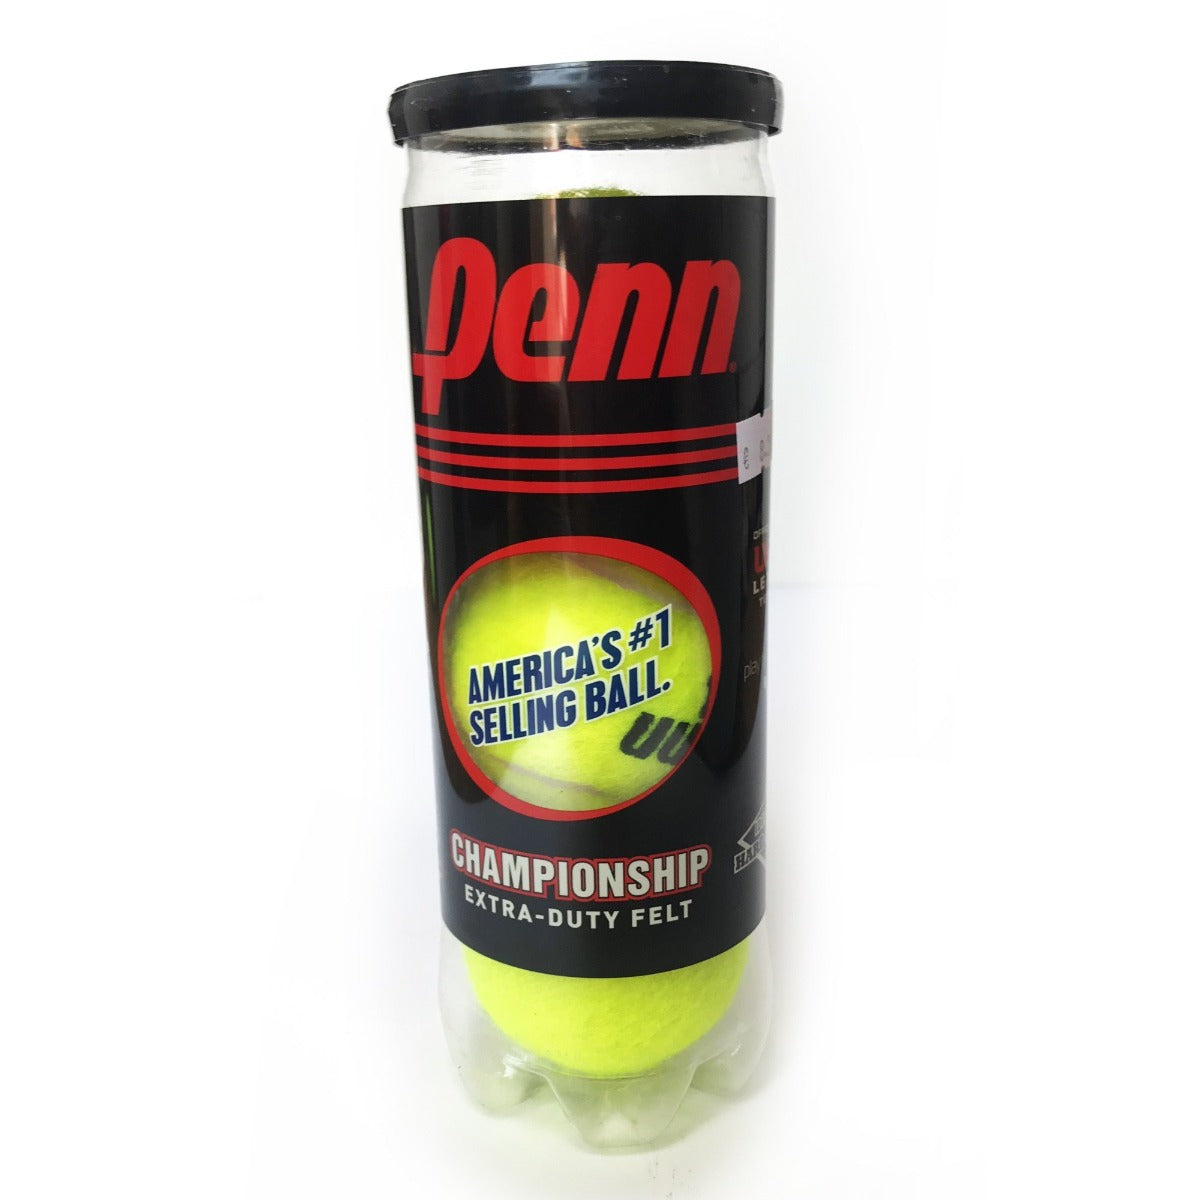 Penn Championship Tennis Ball (3 pack)